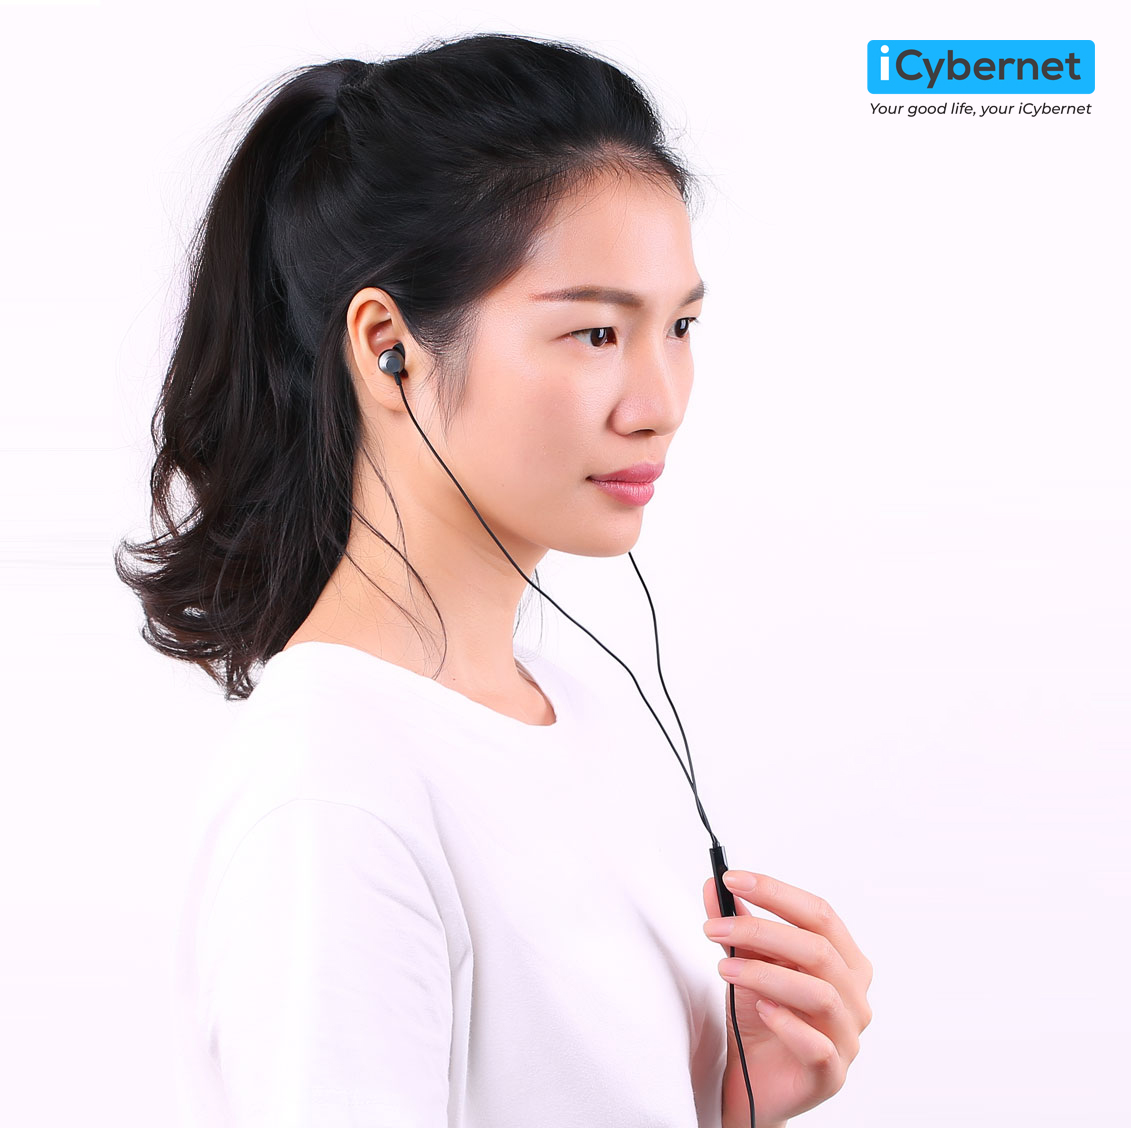 Tai nghe nhét tai có dây jack 3.5mm Remax RM-512 (New Package) - Hàng chính hãng